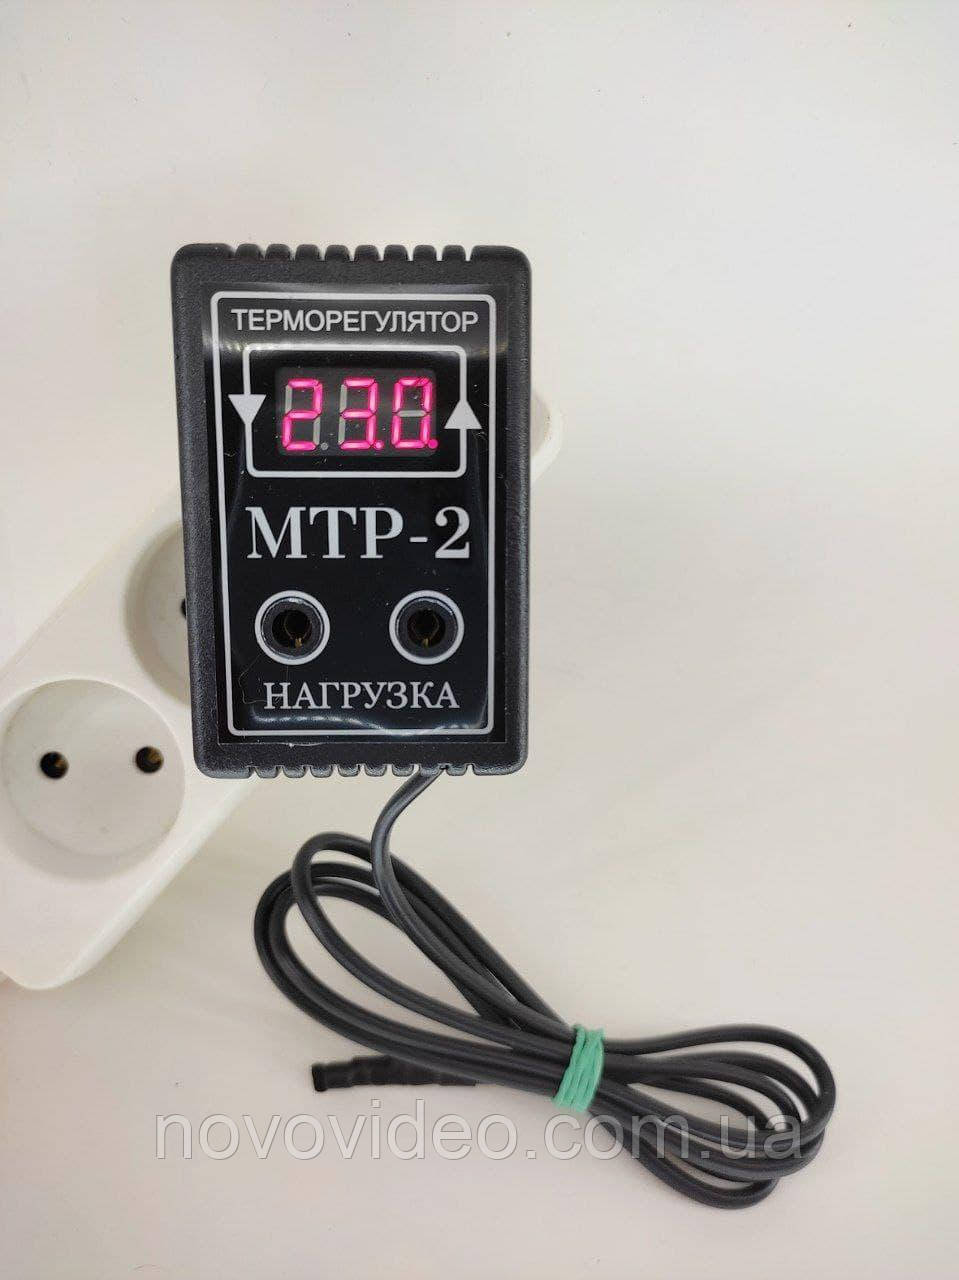 Терморегулятор МТР-2 цифровой на два рівня температури на 10А, фото 1